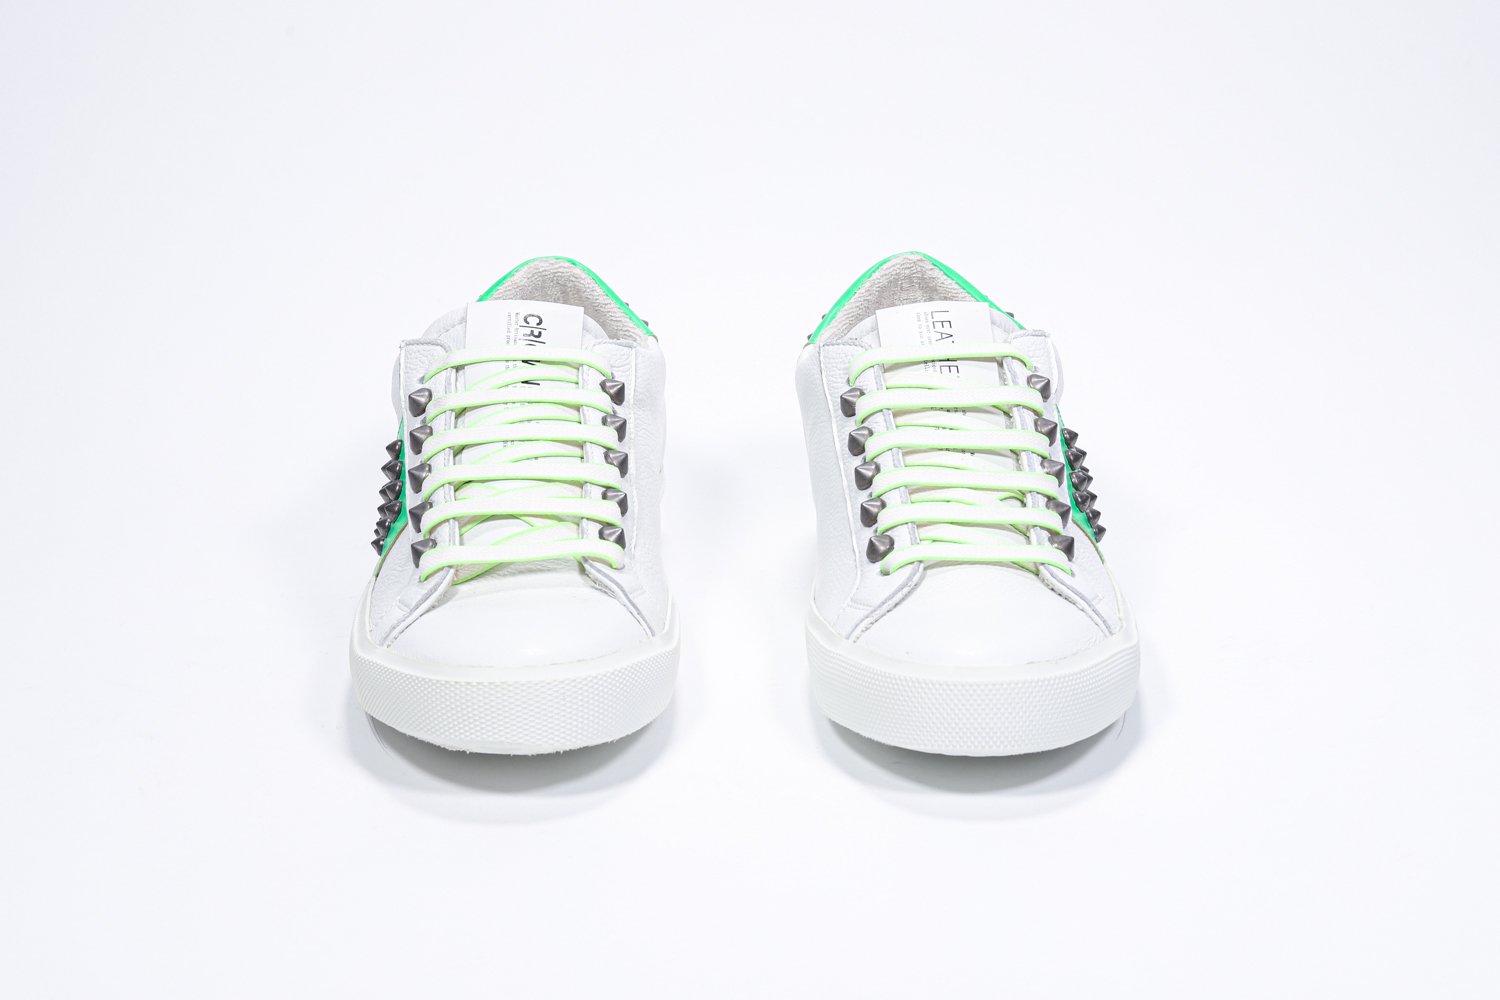 Vue de face de la chaussure blanche et vert fluo sneaker. Tige en cuir avec clous et semelle en caoutchouc blanc.